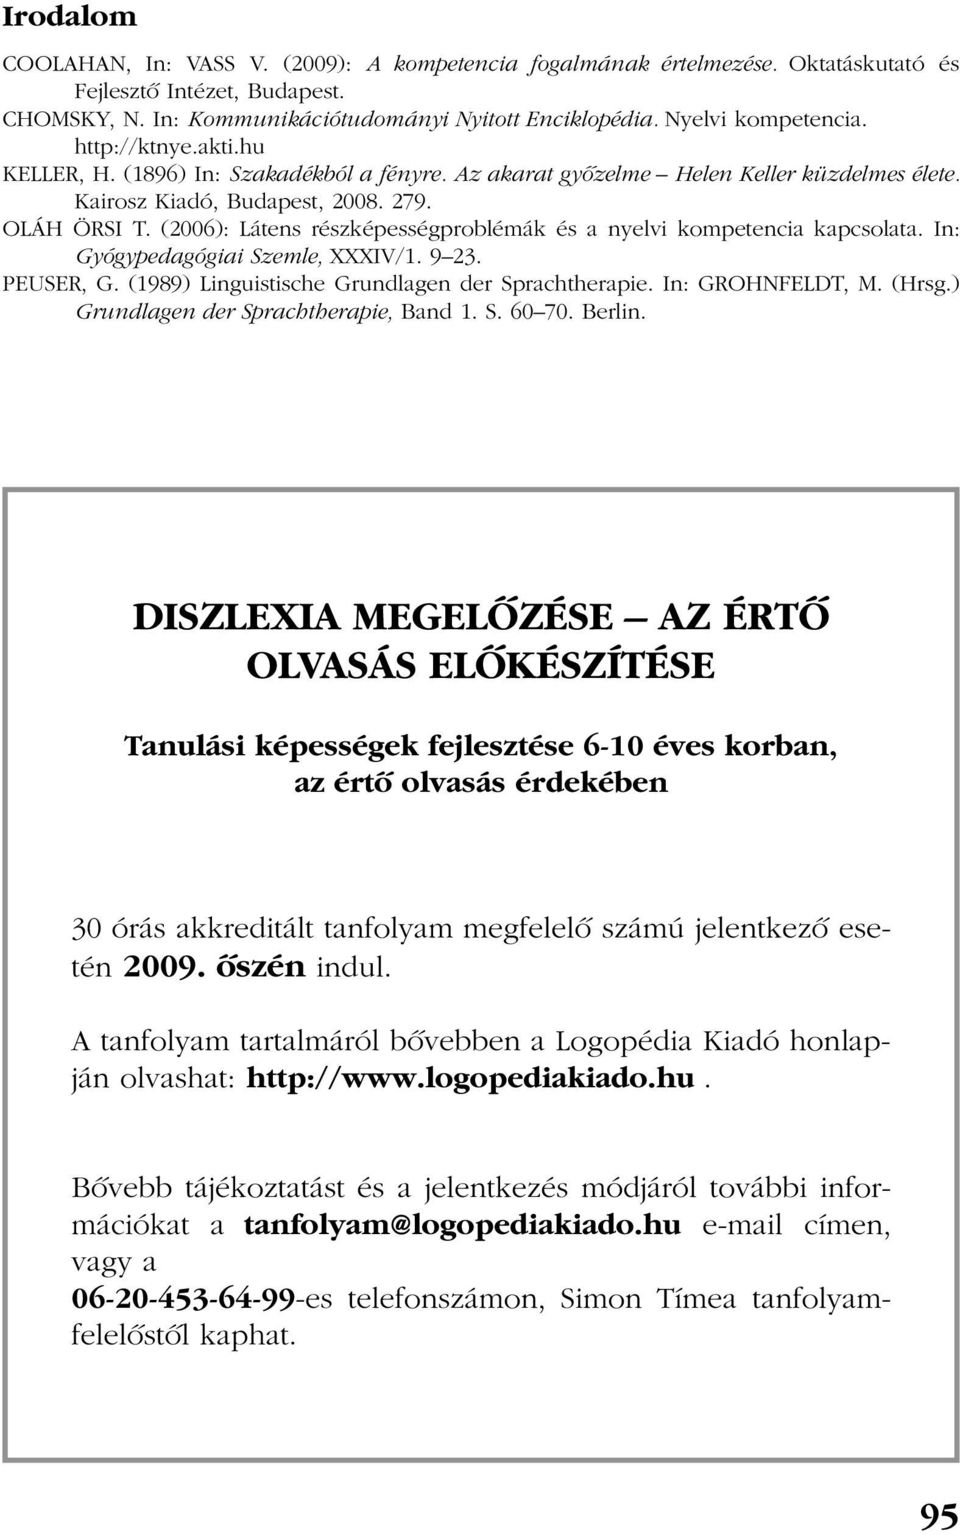 (2006): Látens részképességproblémák és a nyelvi kompetencia kapcsolata. In: Gyógypedagógiai Szemle, XXXIV/1. 9 23. PEUSER, G. (1989) Linguistische Grundlagen der Sprachtherapie. In: GROHNFELDT, M.